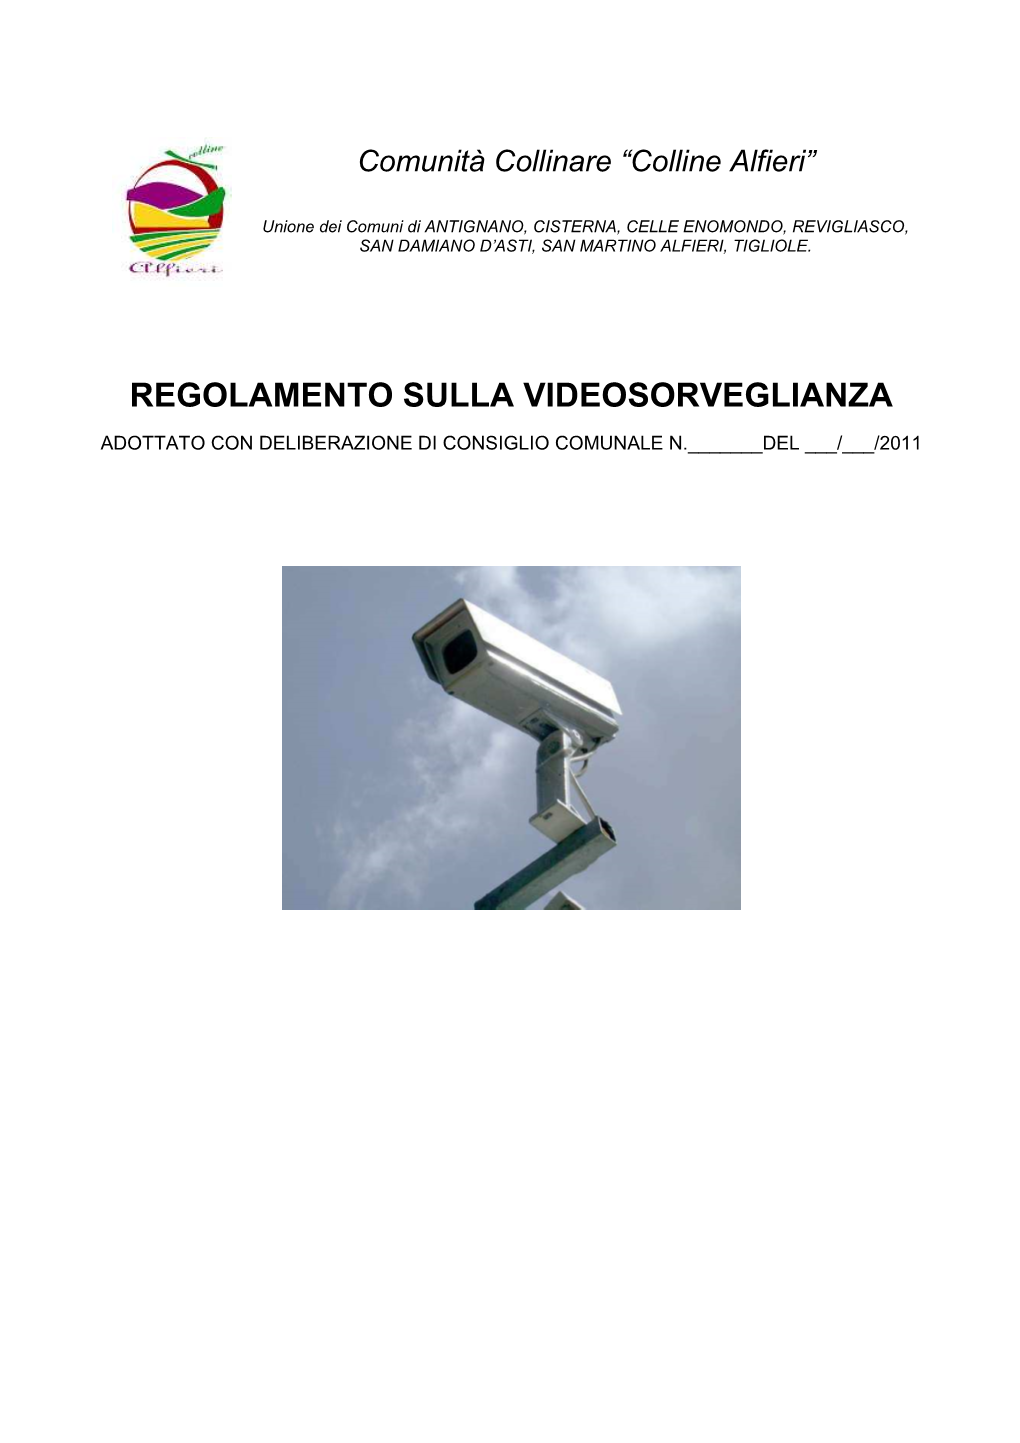 Regolamento SAN DAMIANO Videosorveglianza Definitivo Per Consiglio Sett 2011